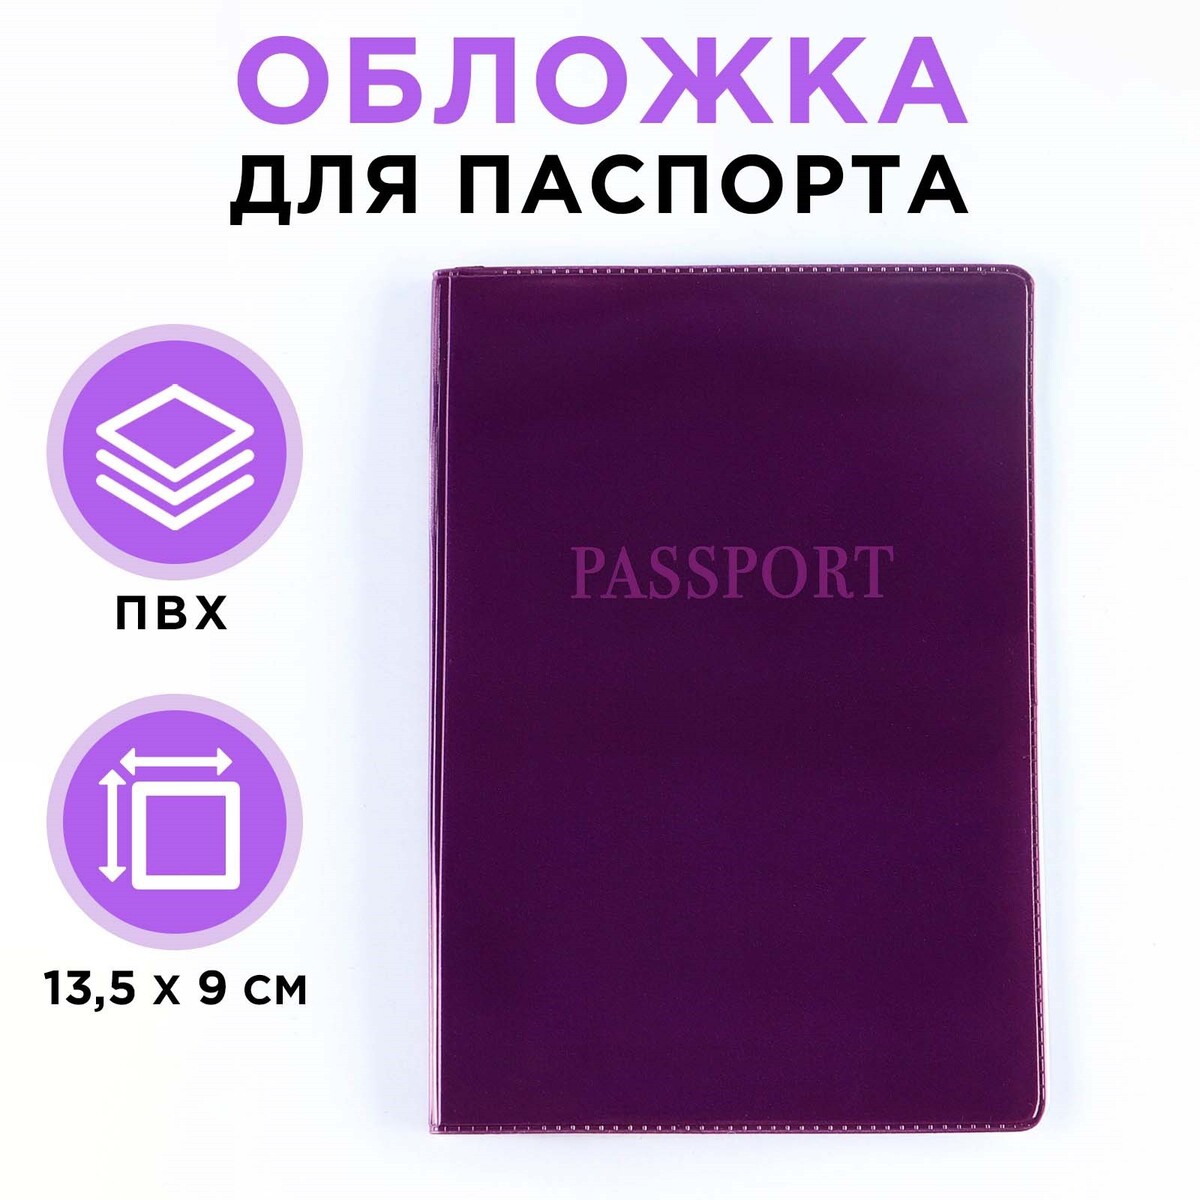 Обложка для паспорта, пвх, цвет фиолетовый обложка для паспорта фиолетовый